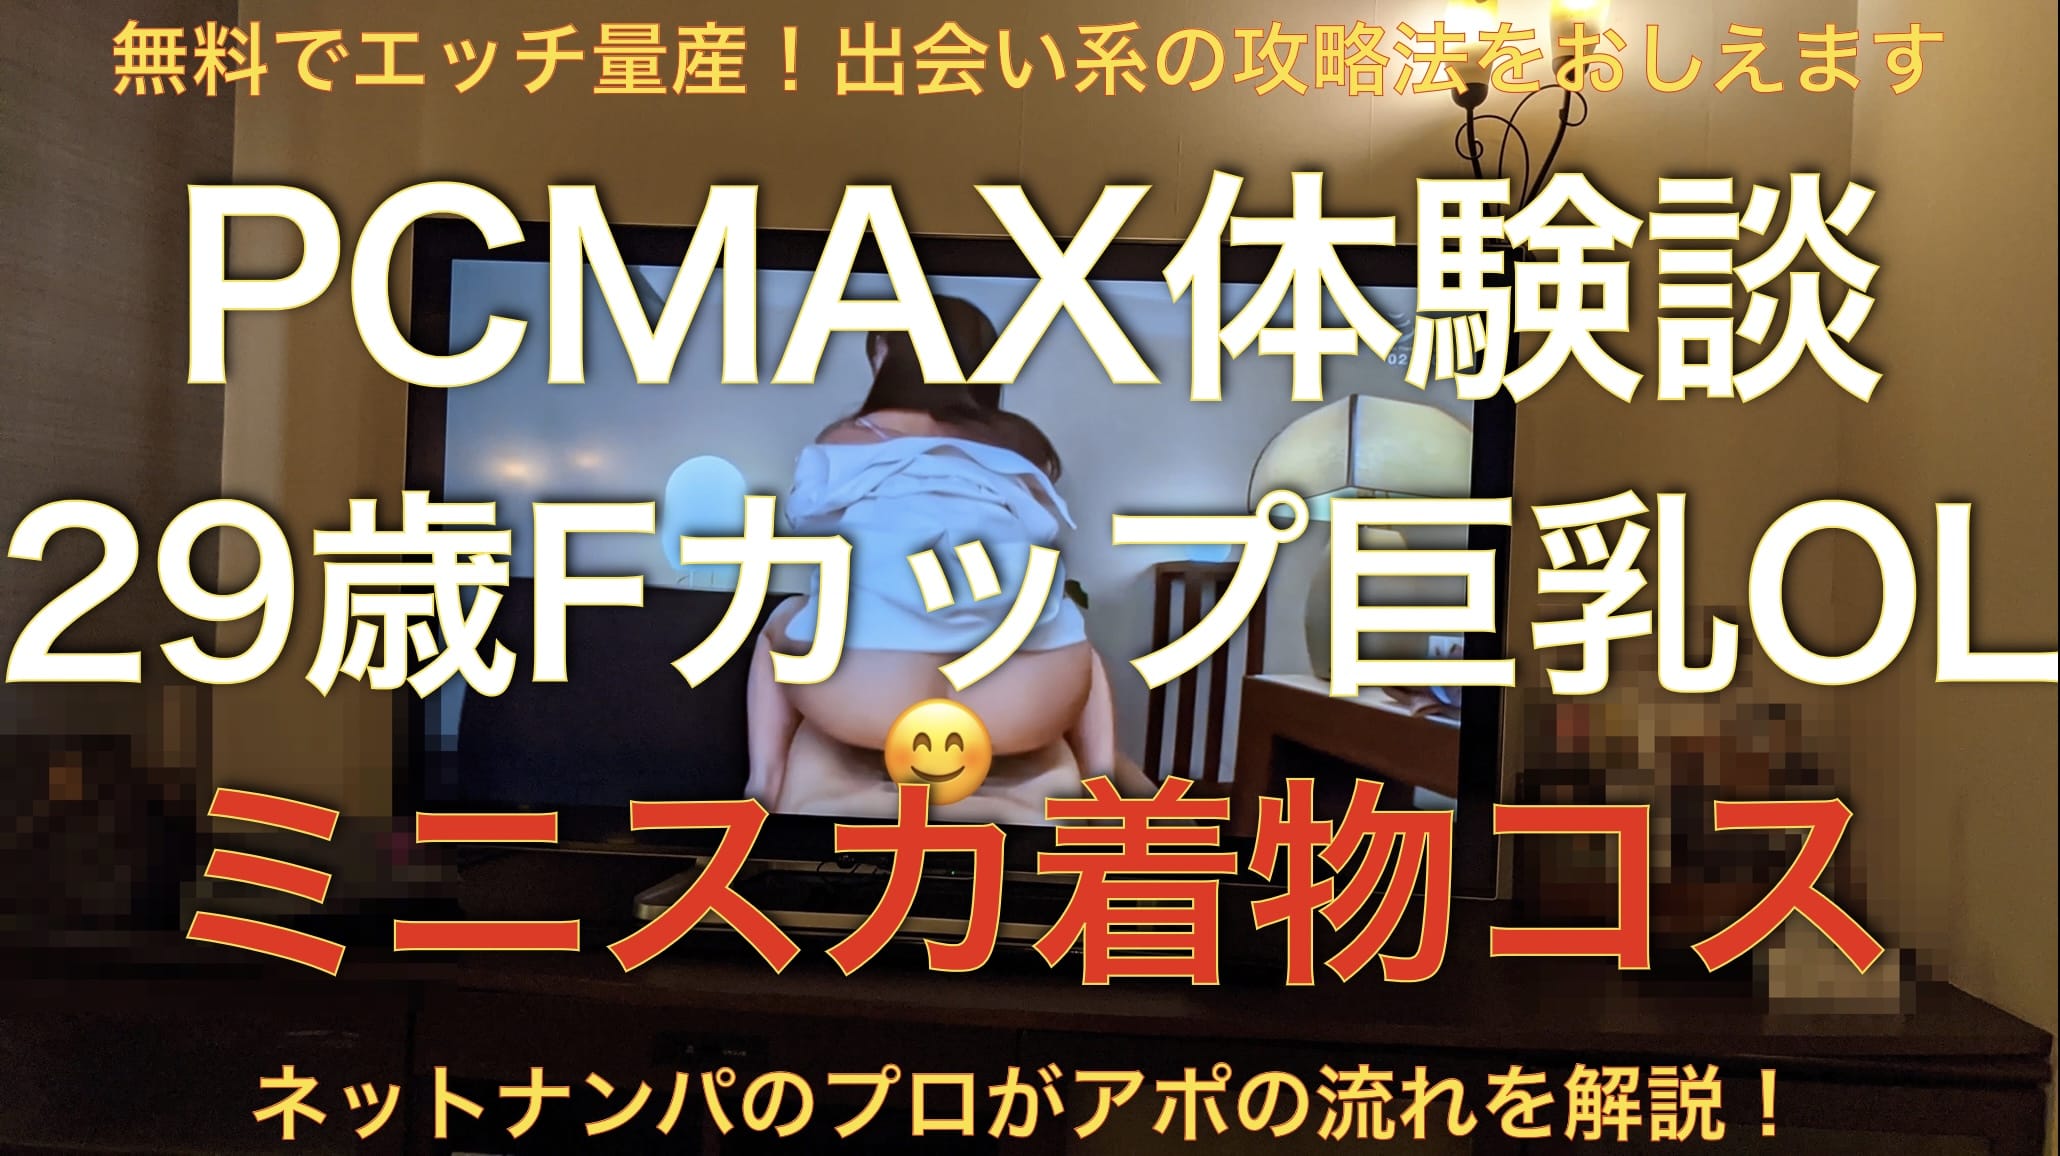 【PCMAX体験談】29歳Fカップ巨乳セフレにミニスカ着物着せてエッチしてきた。サムネイル画像